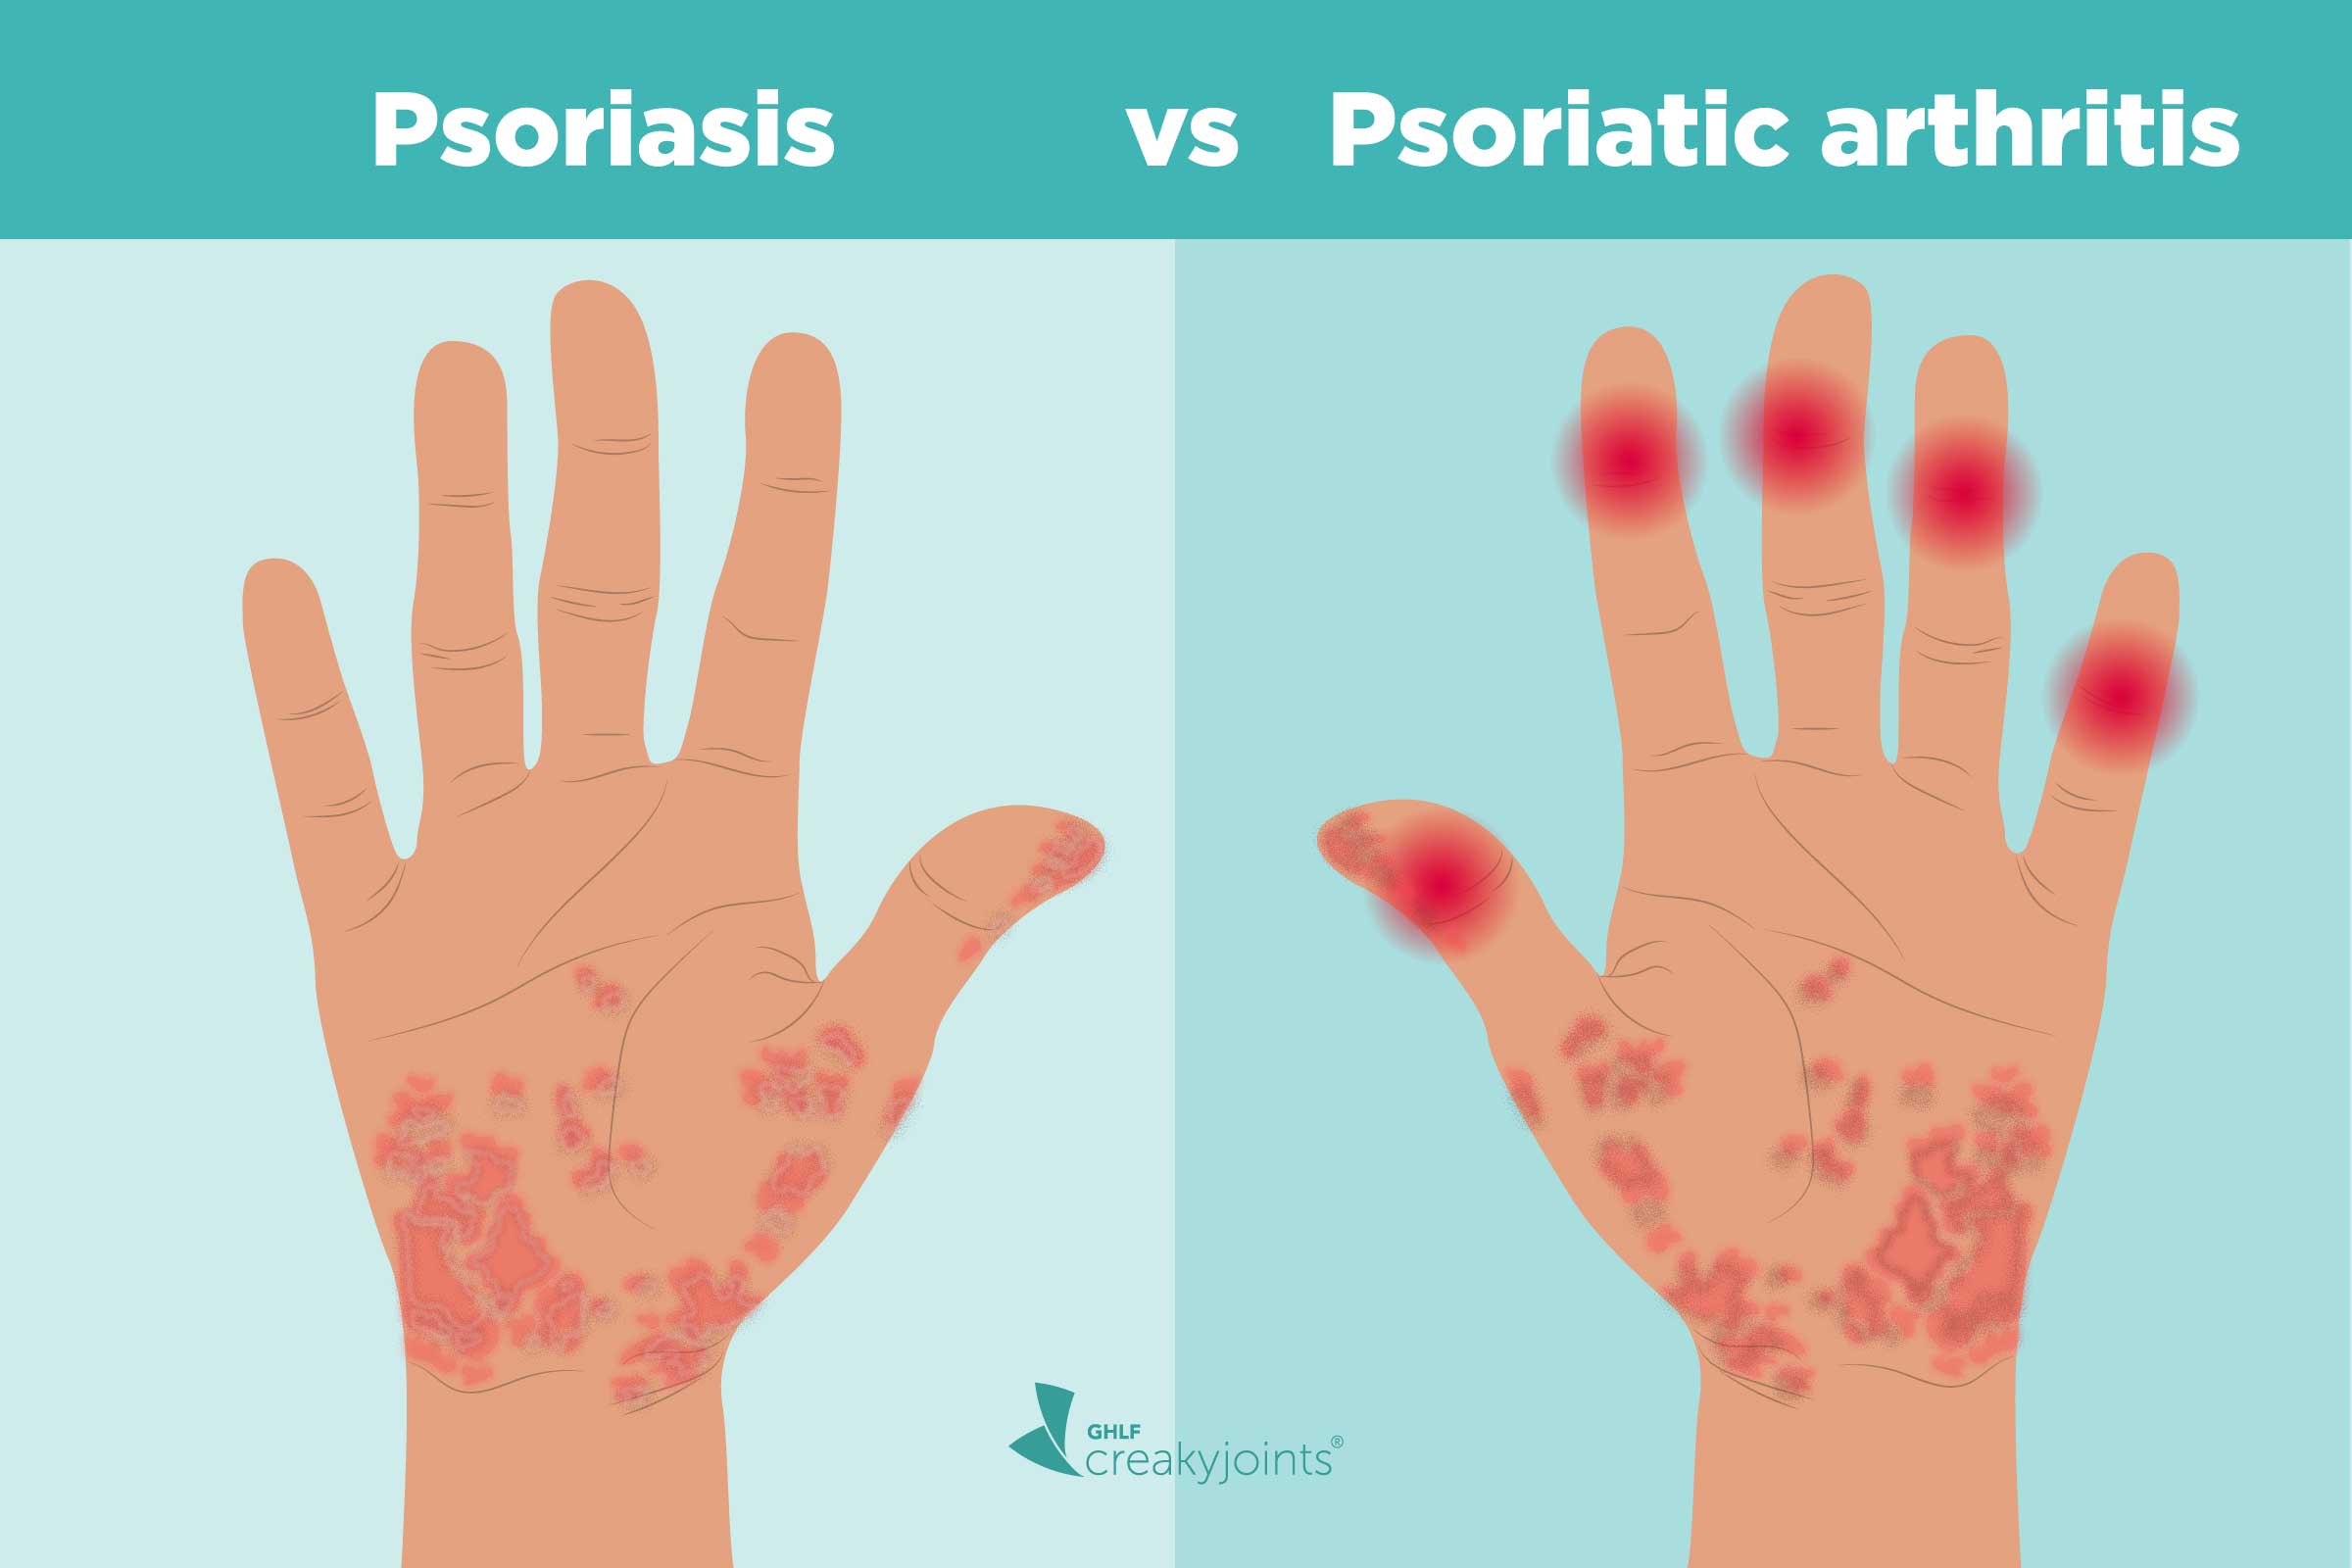 plaque psoriasis and psoriatic arthritis